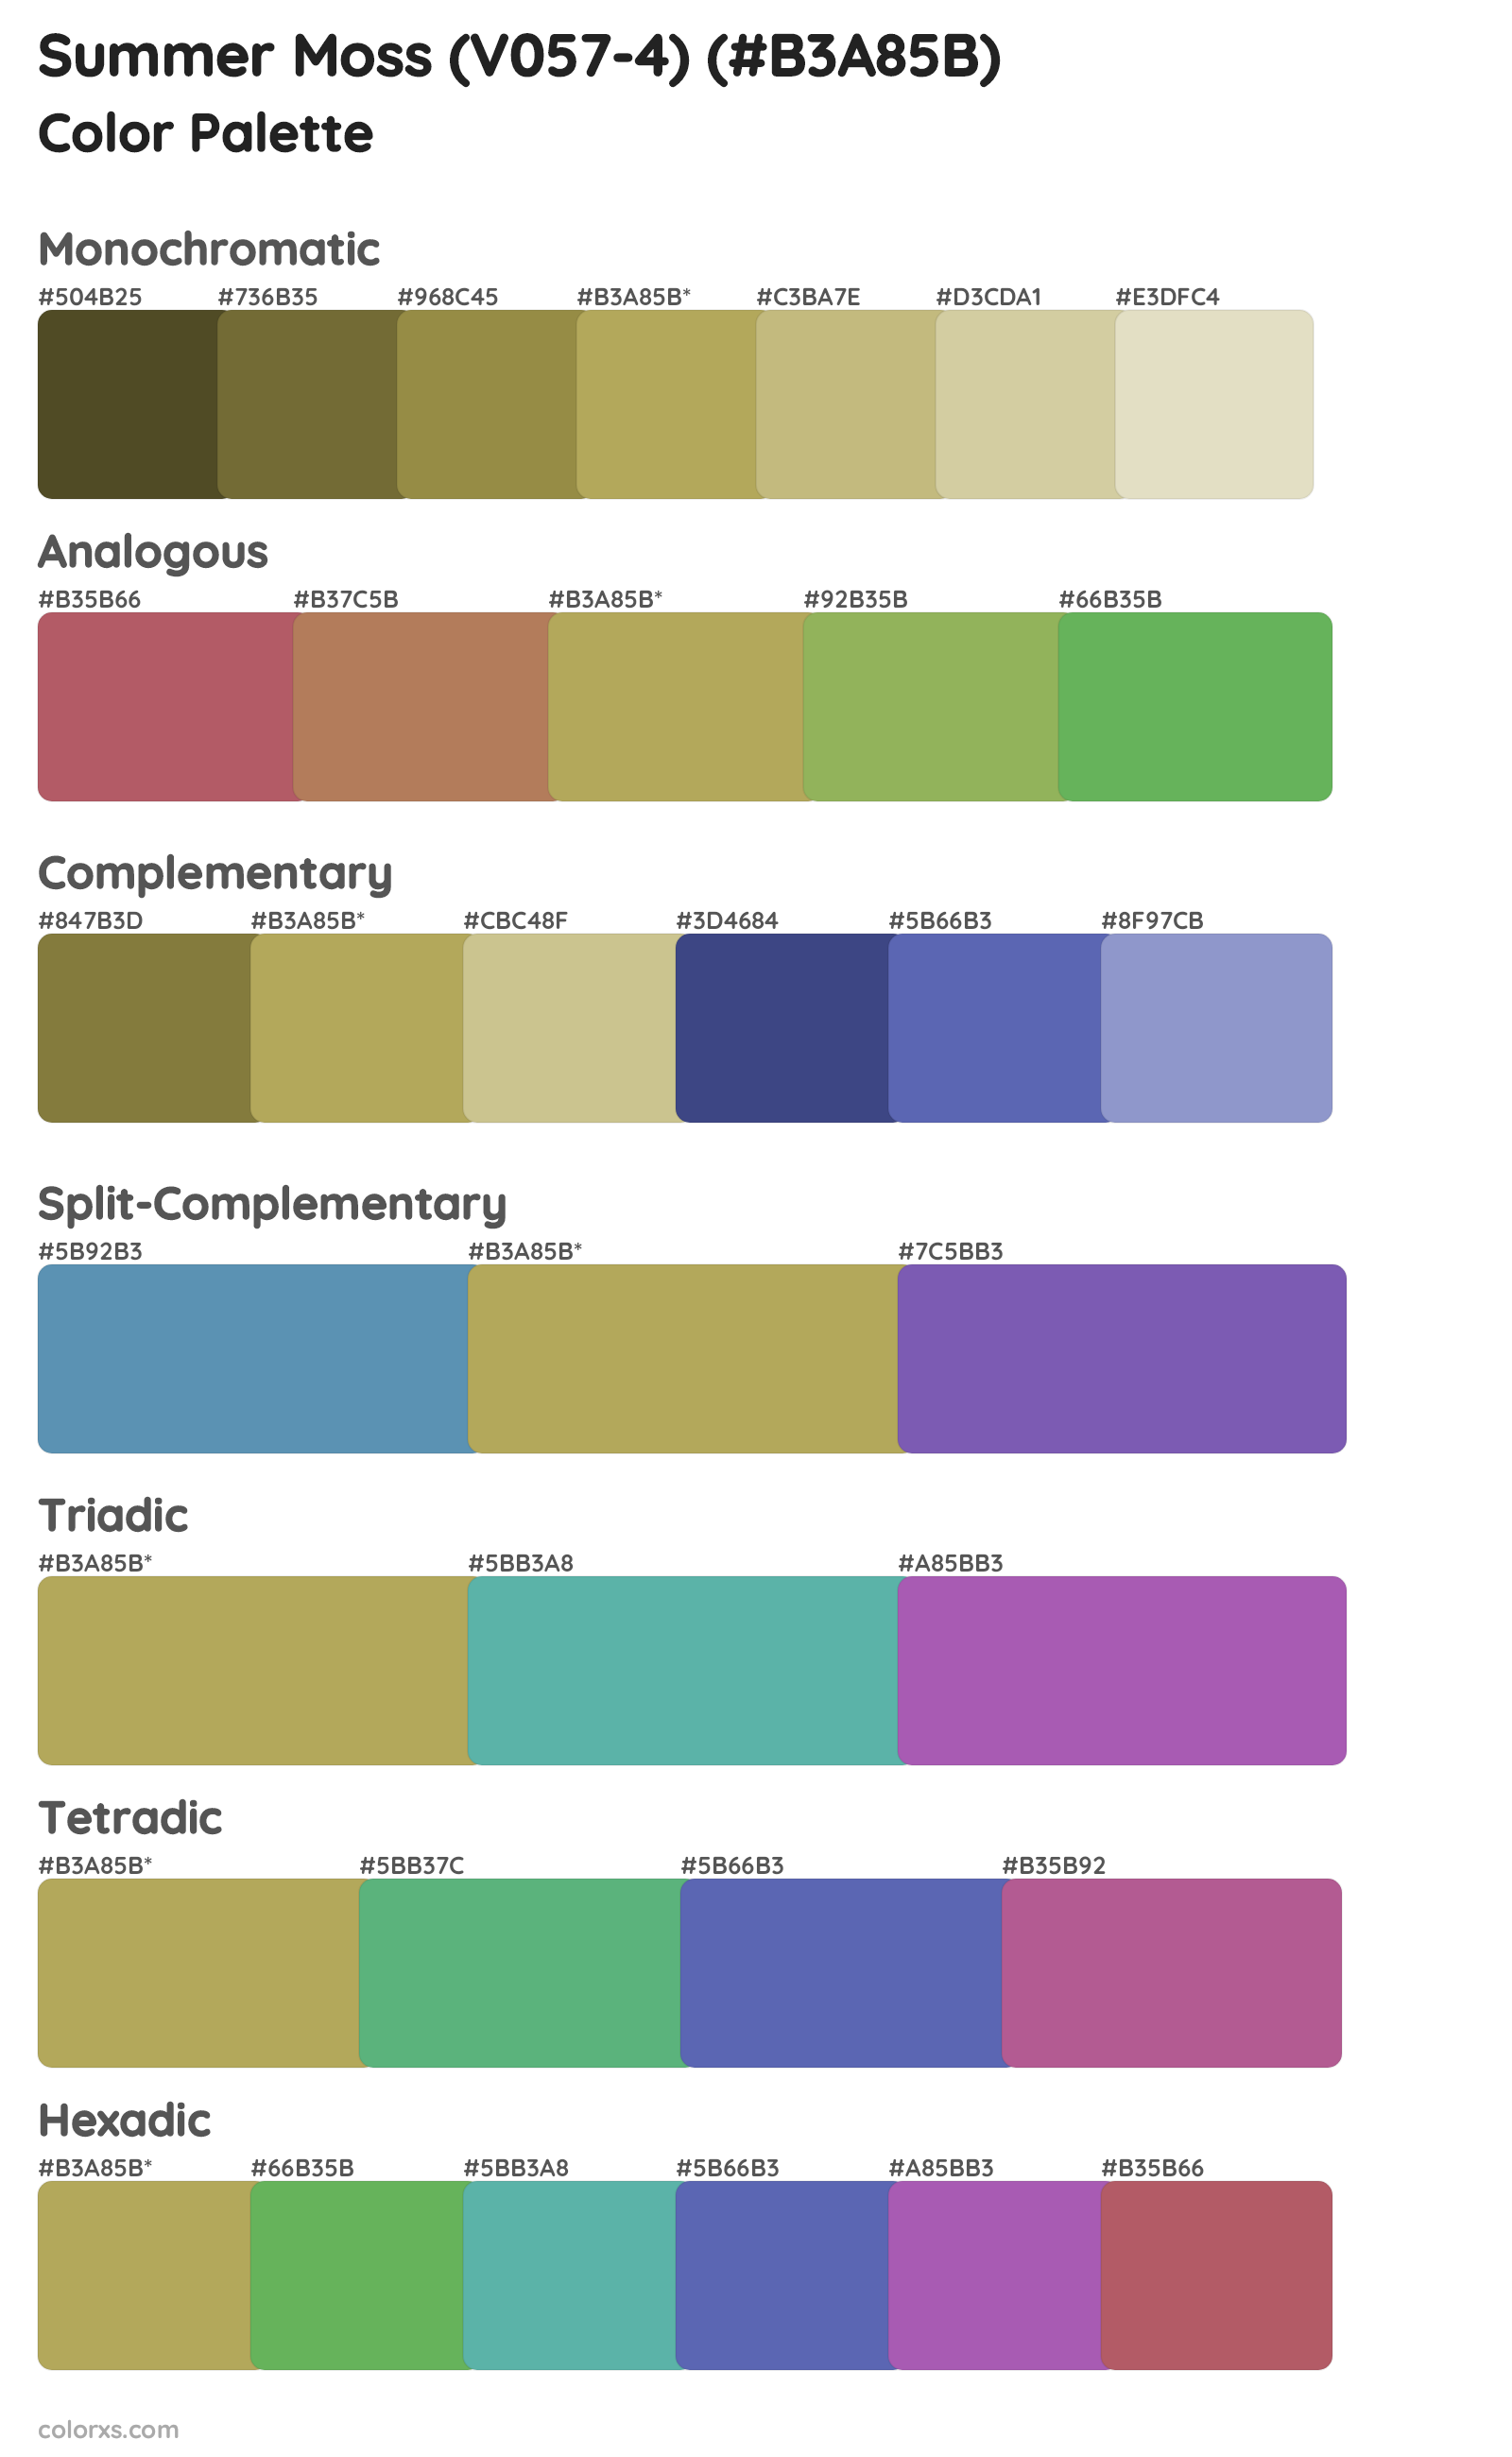 Summer Moss (V057-4) Color Scheme Palettes